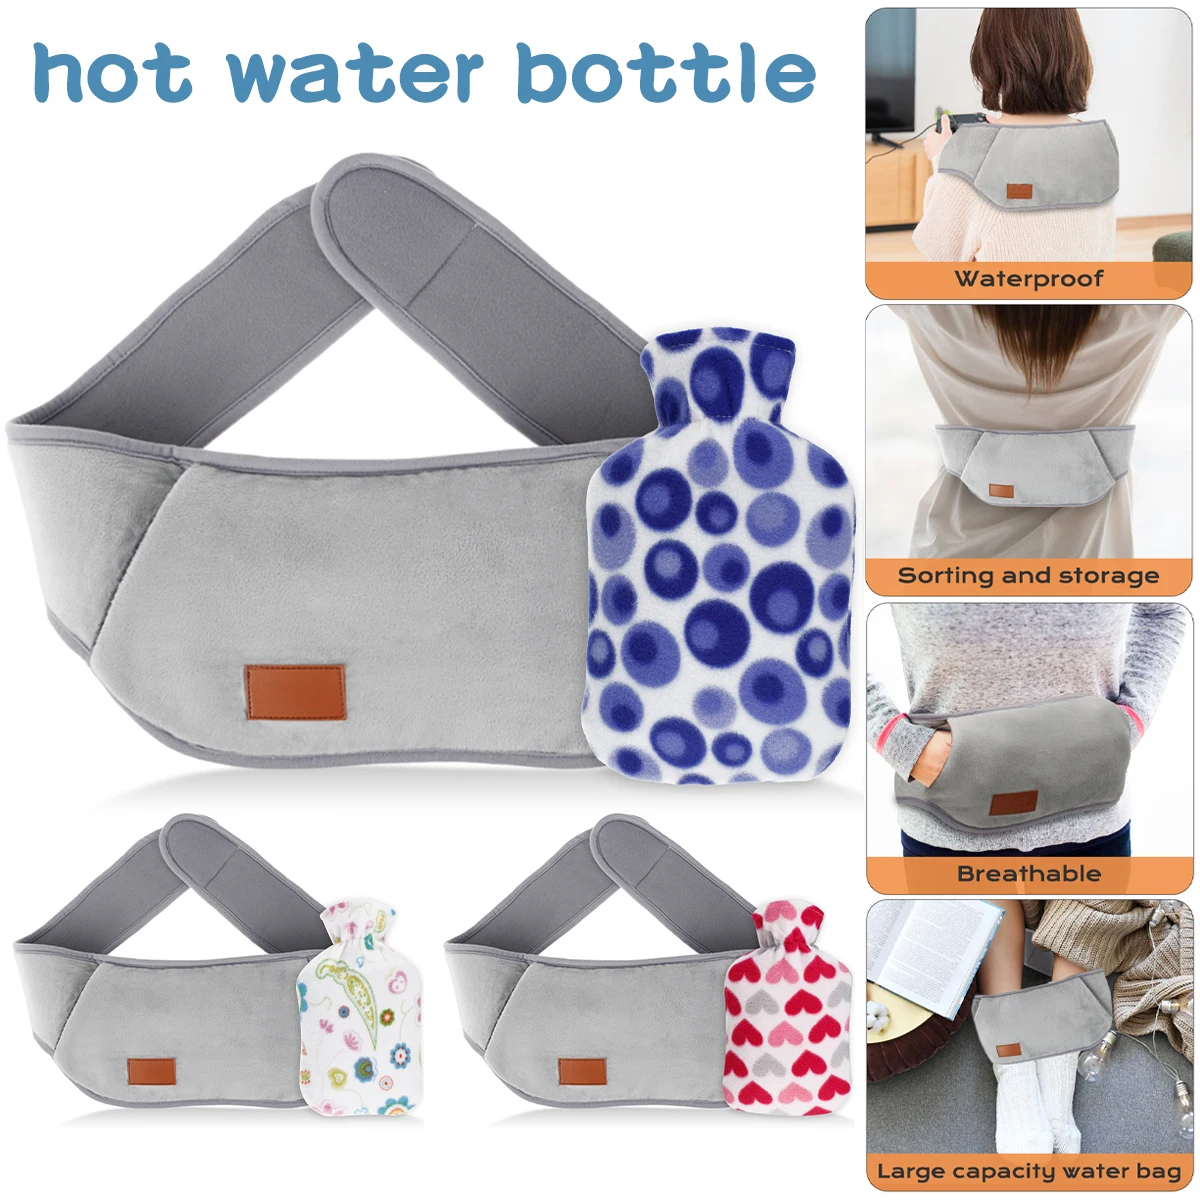 

Botella de agua caliente con cinturón y funda de felpa, bolsa de agua caliente suave y cálida, reutilizable, PVC, con tapa de